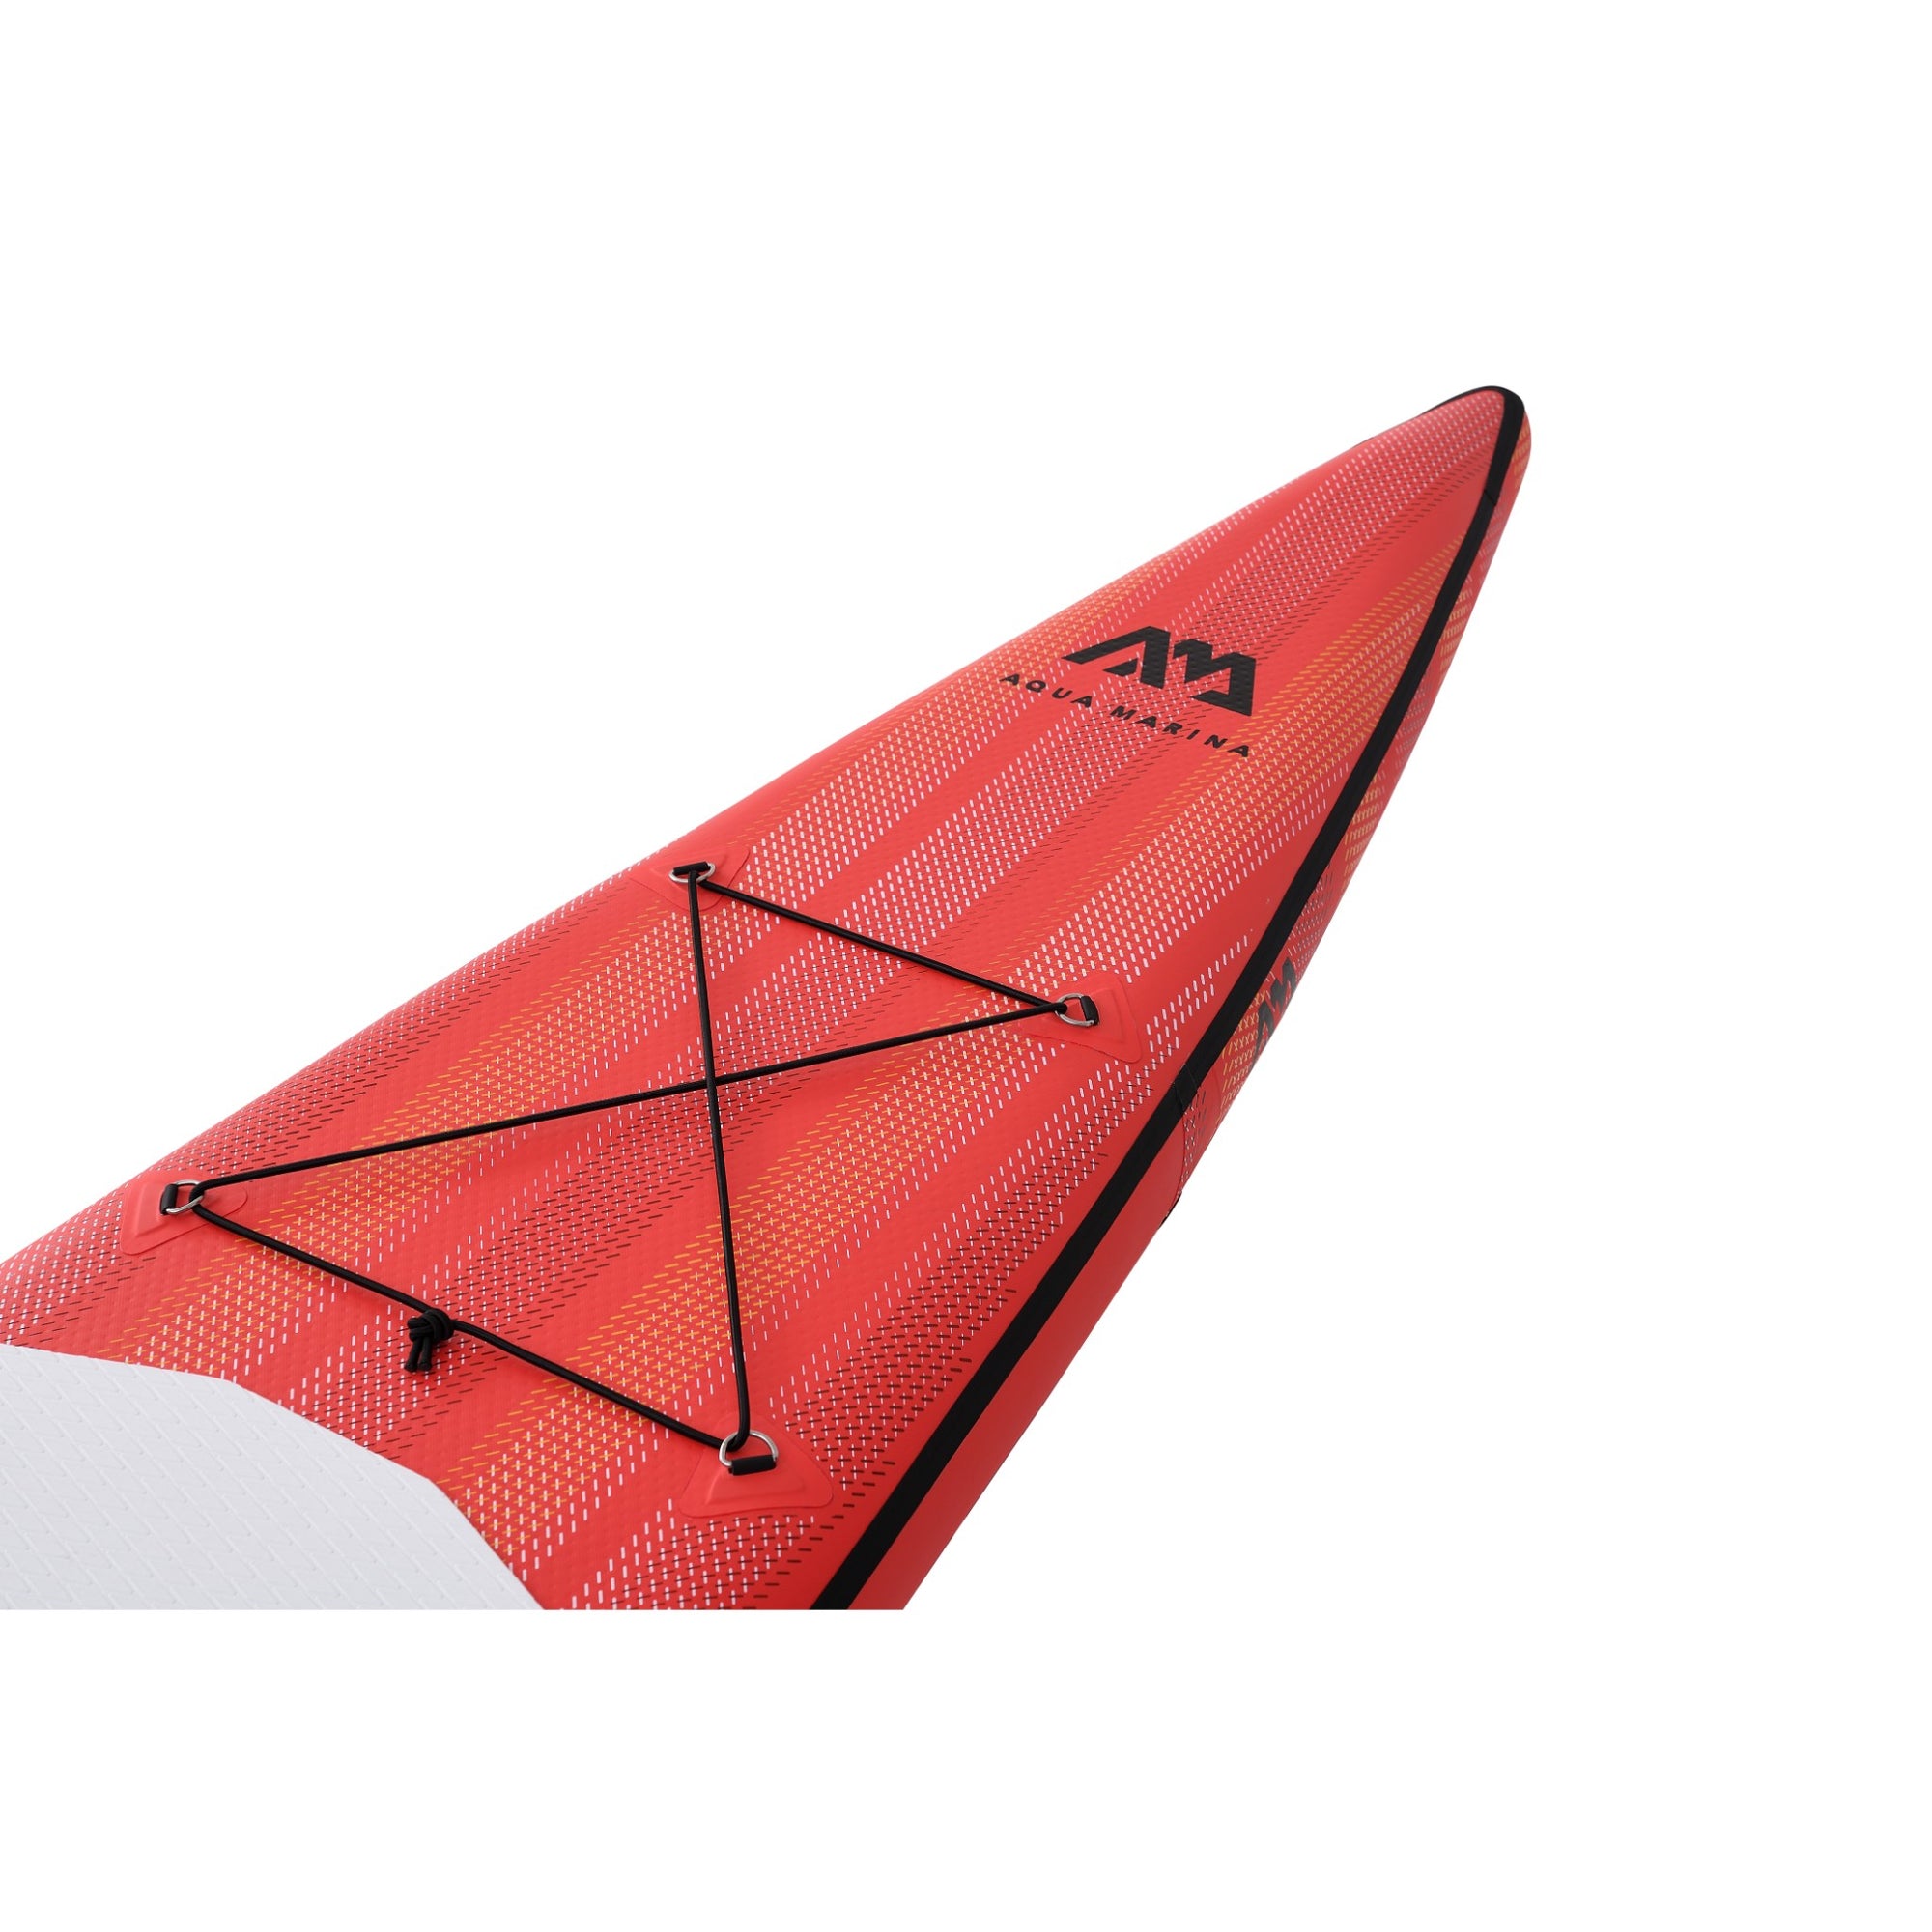 Aqua Marina Race 14' 2020-Paddle-Board 